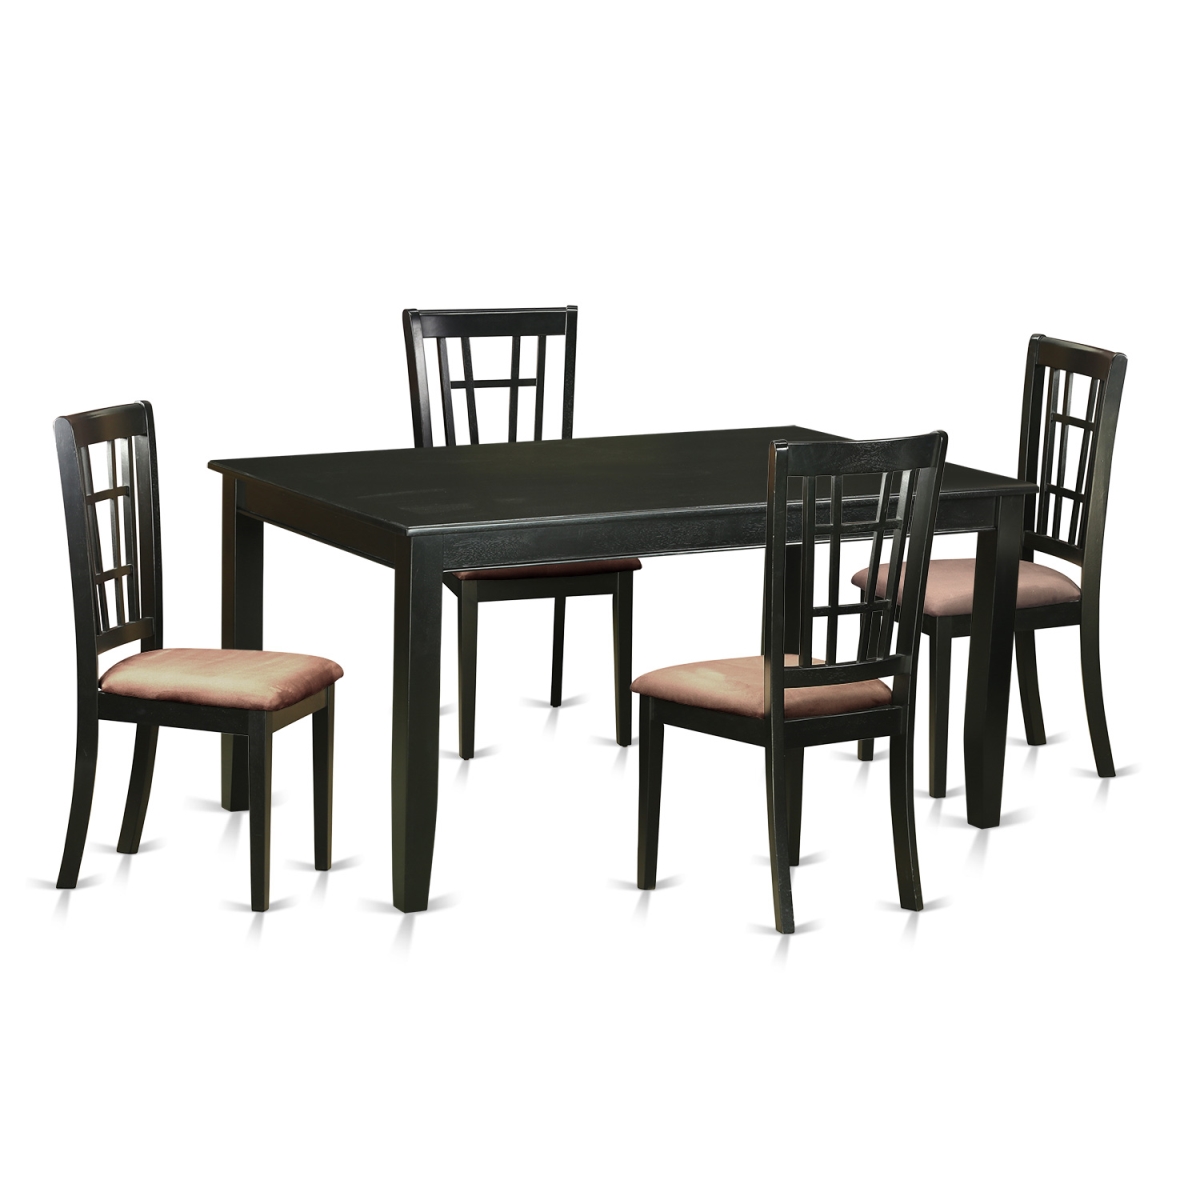 Duni5-blk-c Microfiber Dinette Set - Kitchen Table & 4 Chairs, Black - 5 Piece